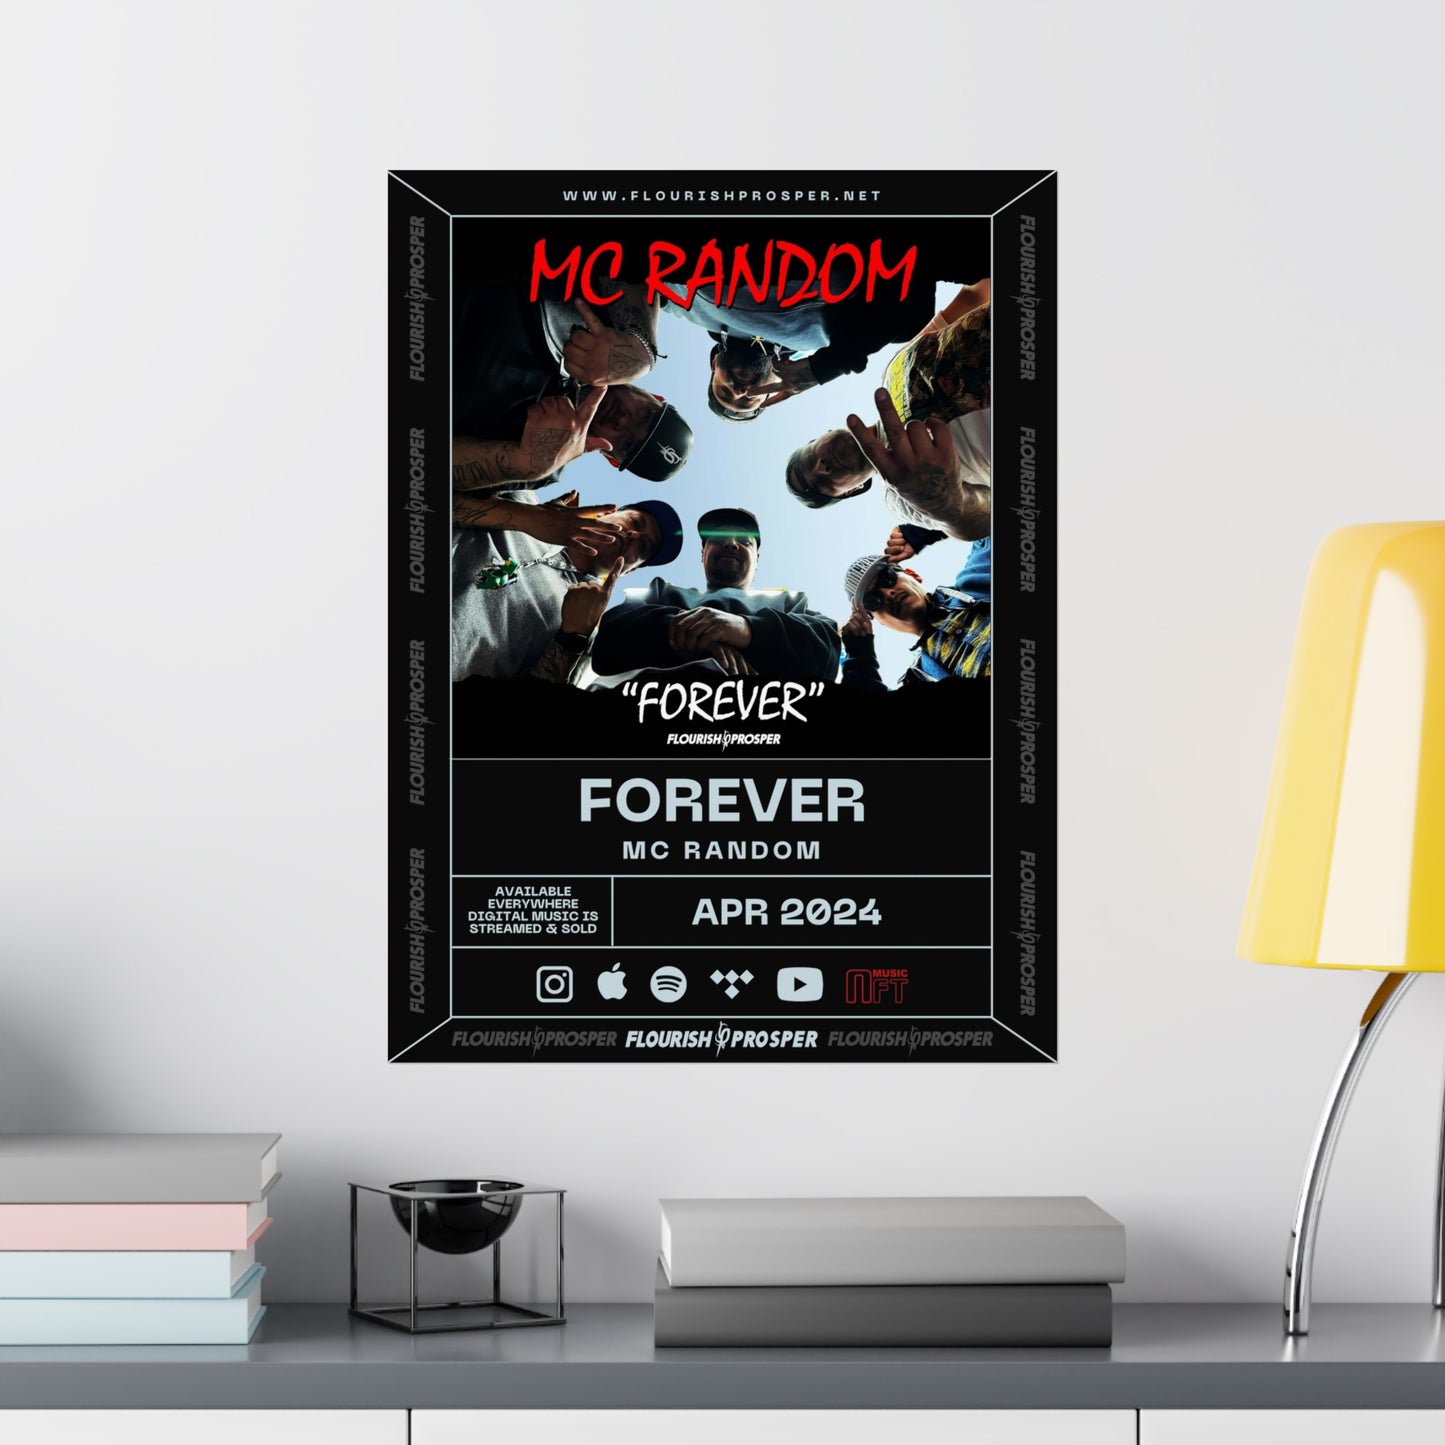 MC Random "Forever " Matte Vertical Posters